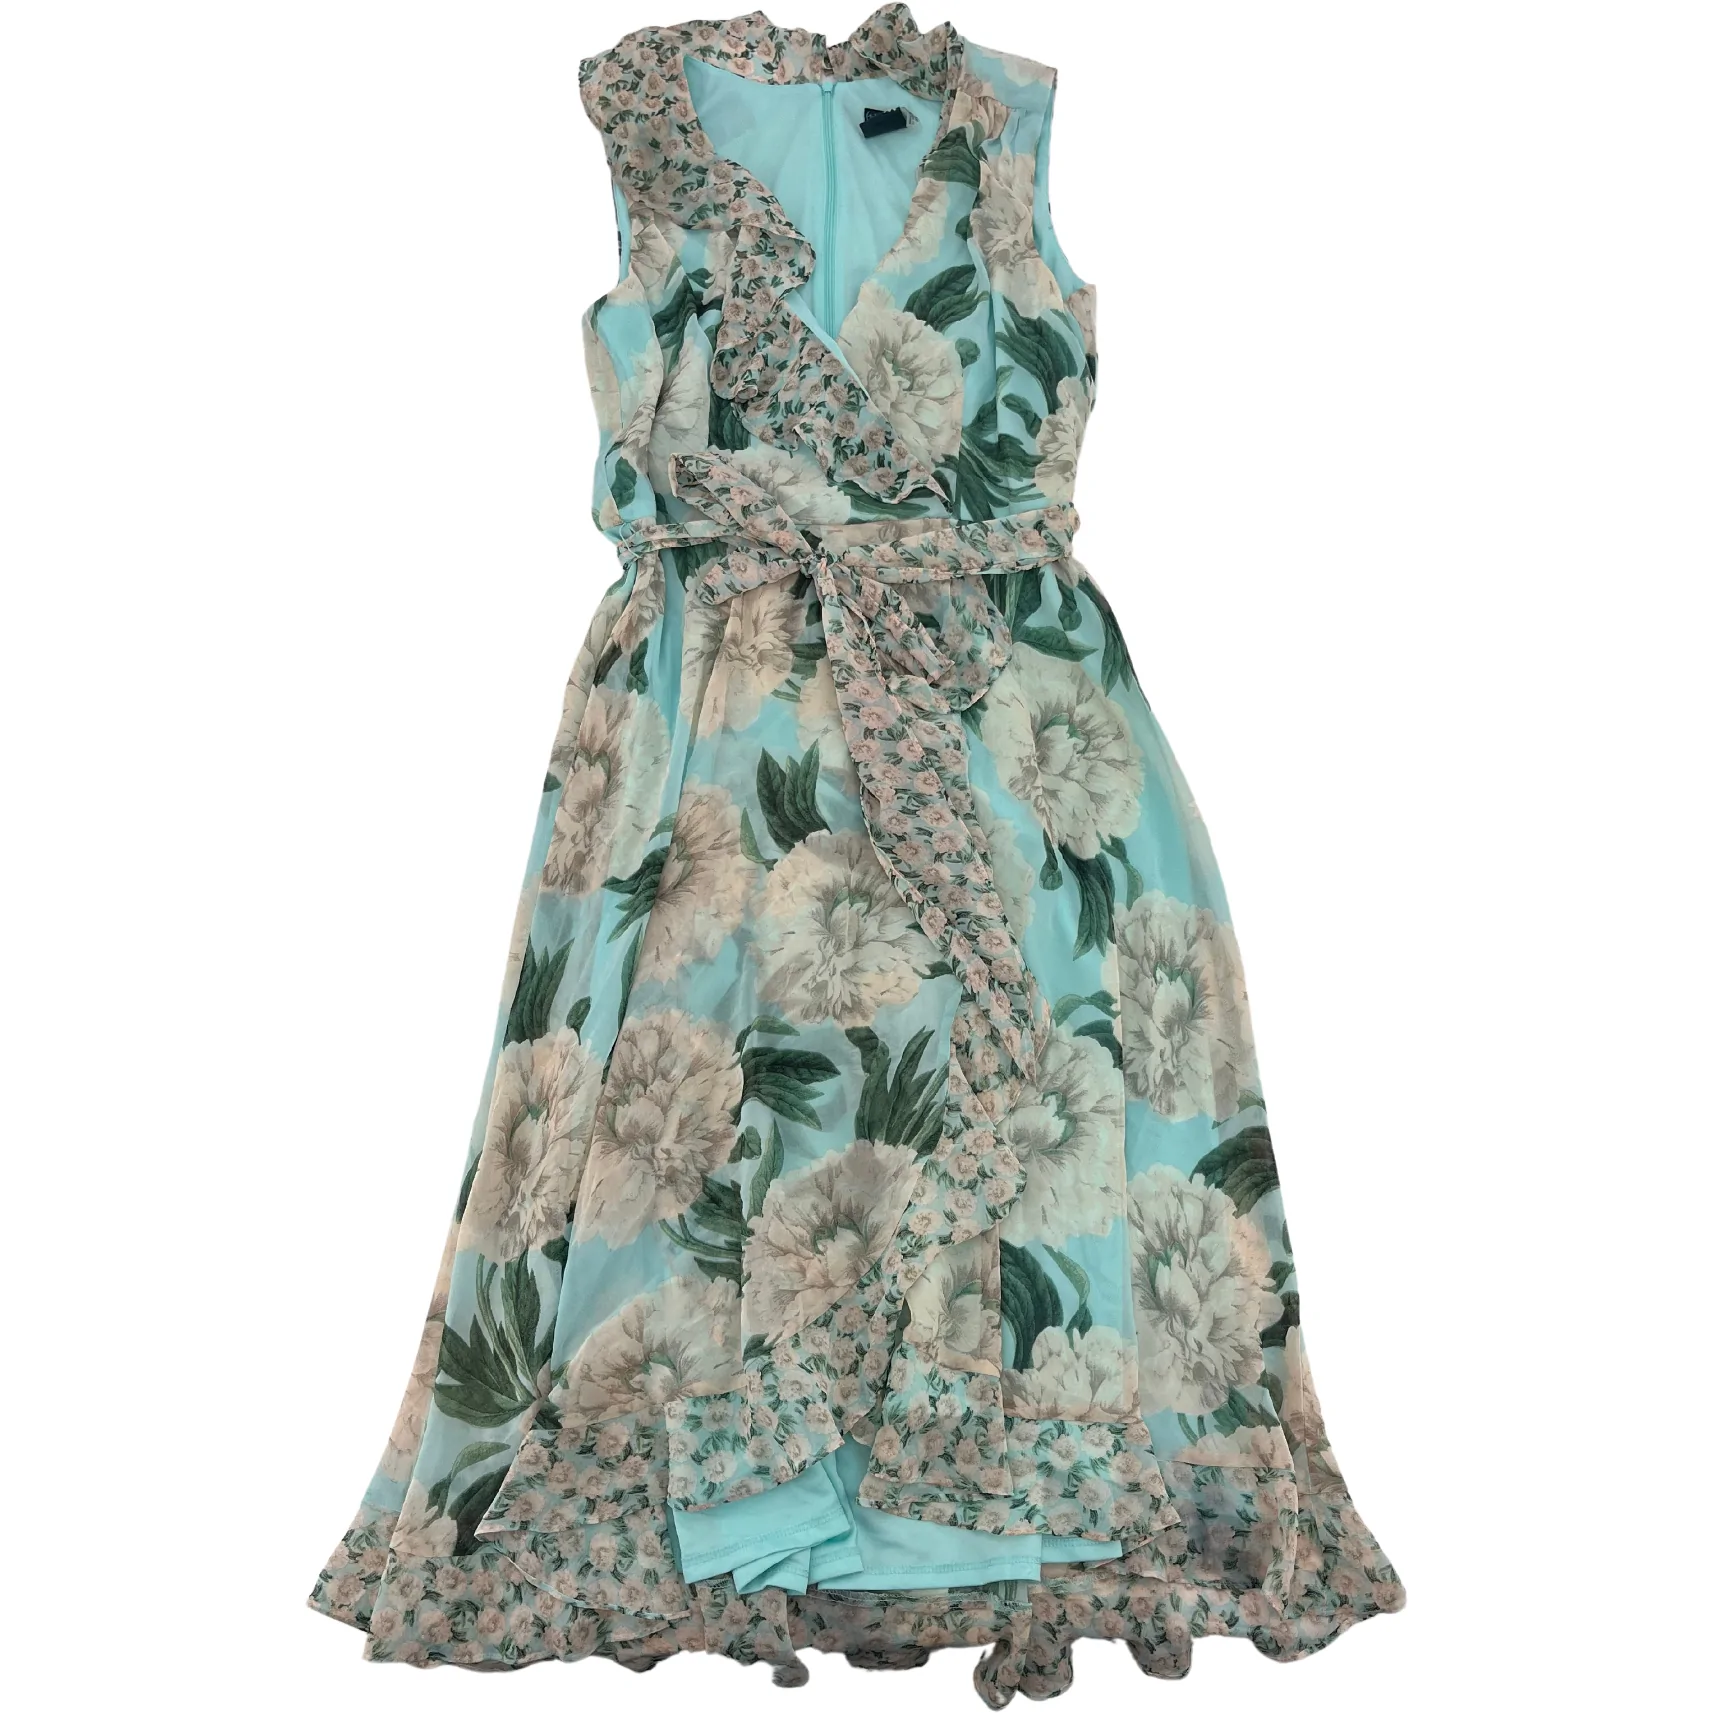 Gabby Style Women's Summer Dress: Ruffle Dress / Floral Design / Size 12